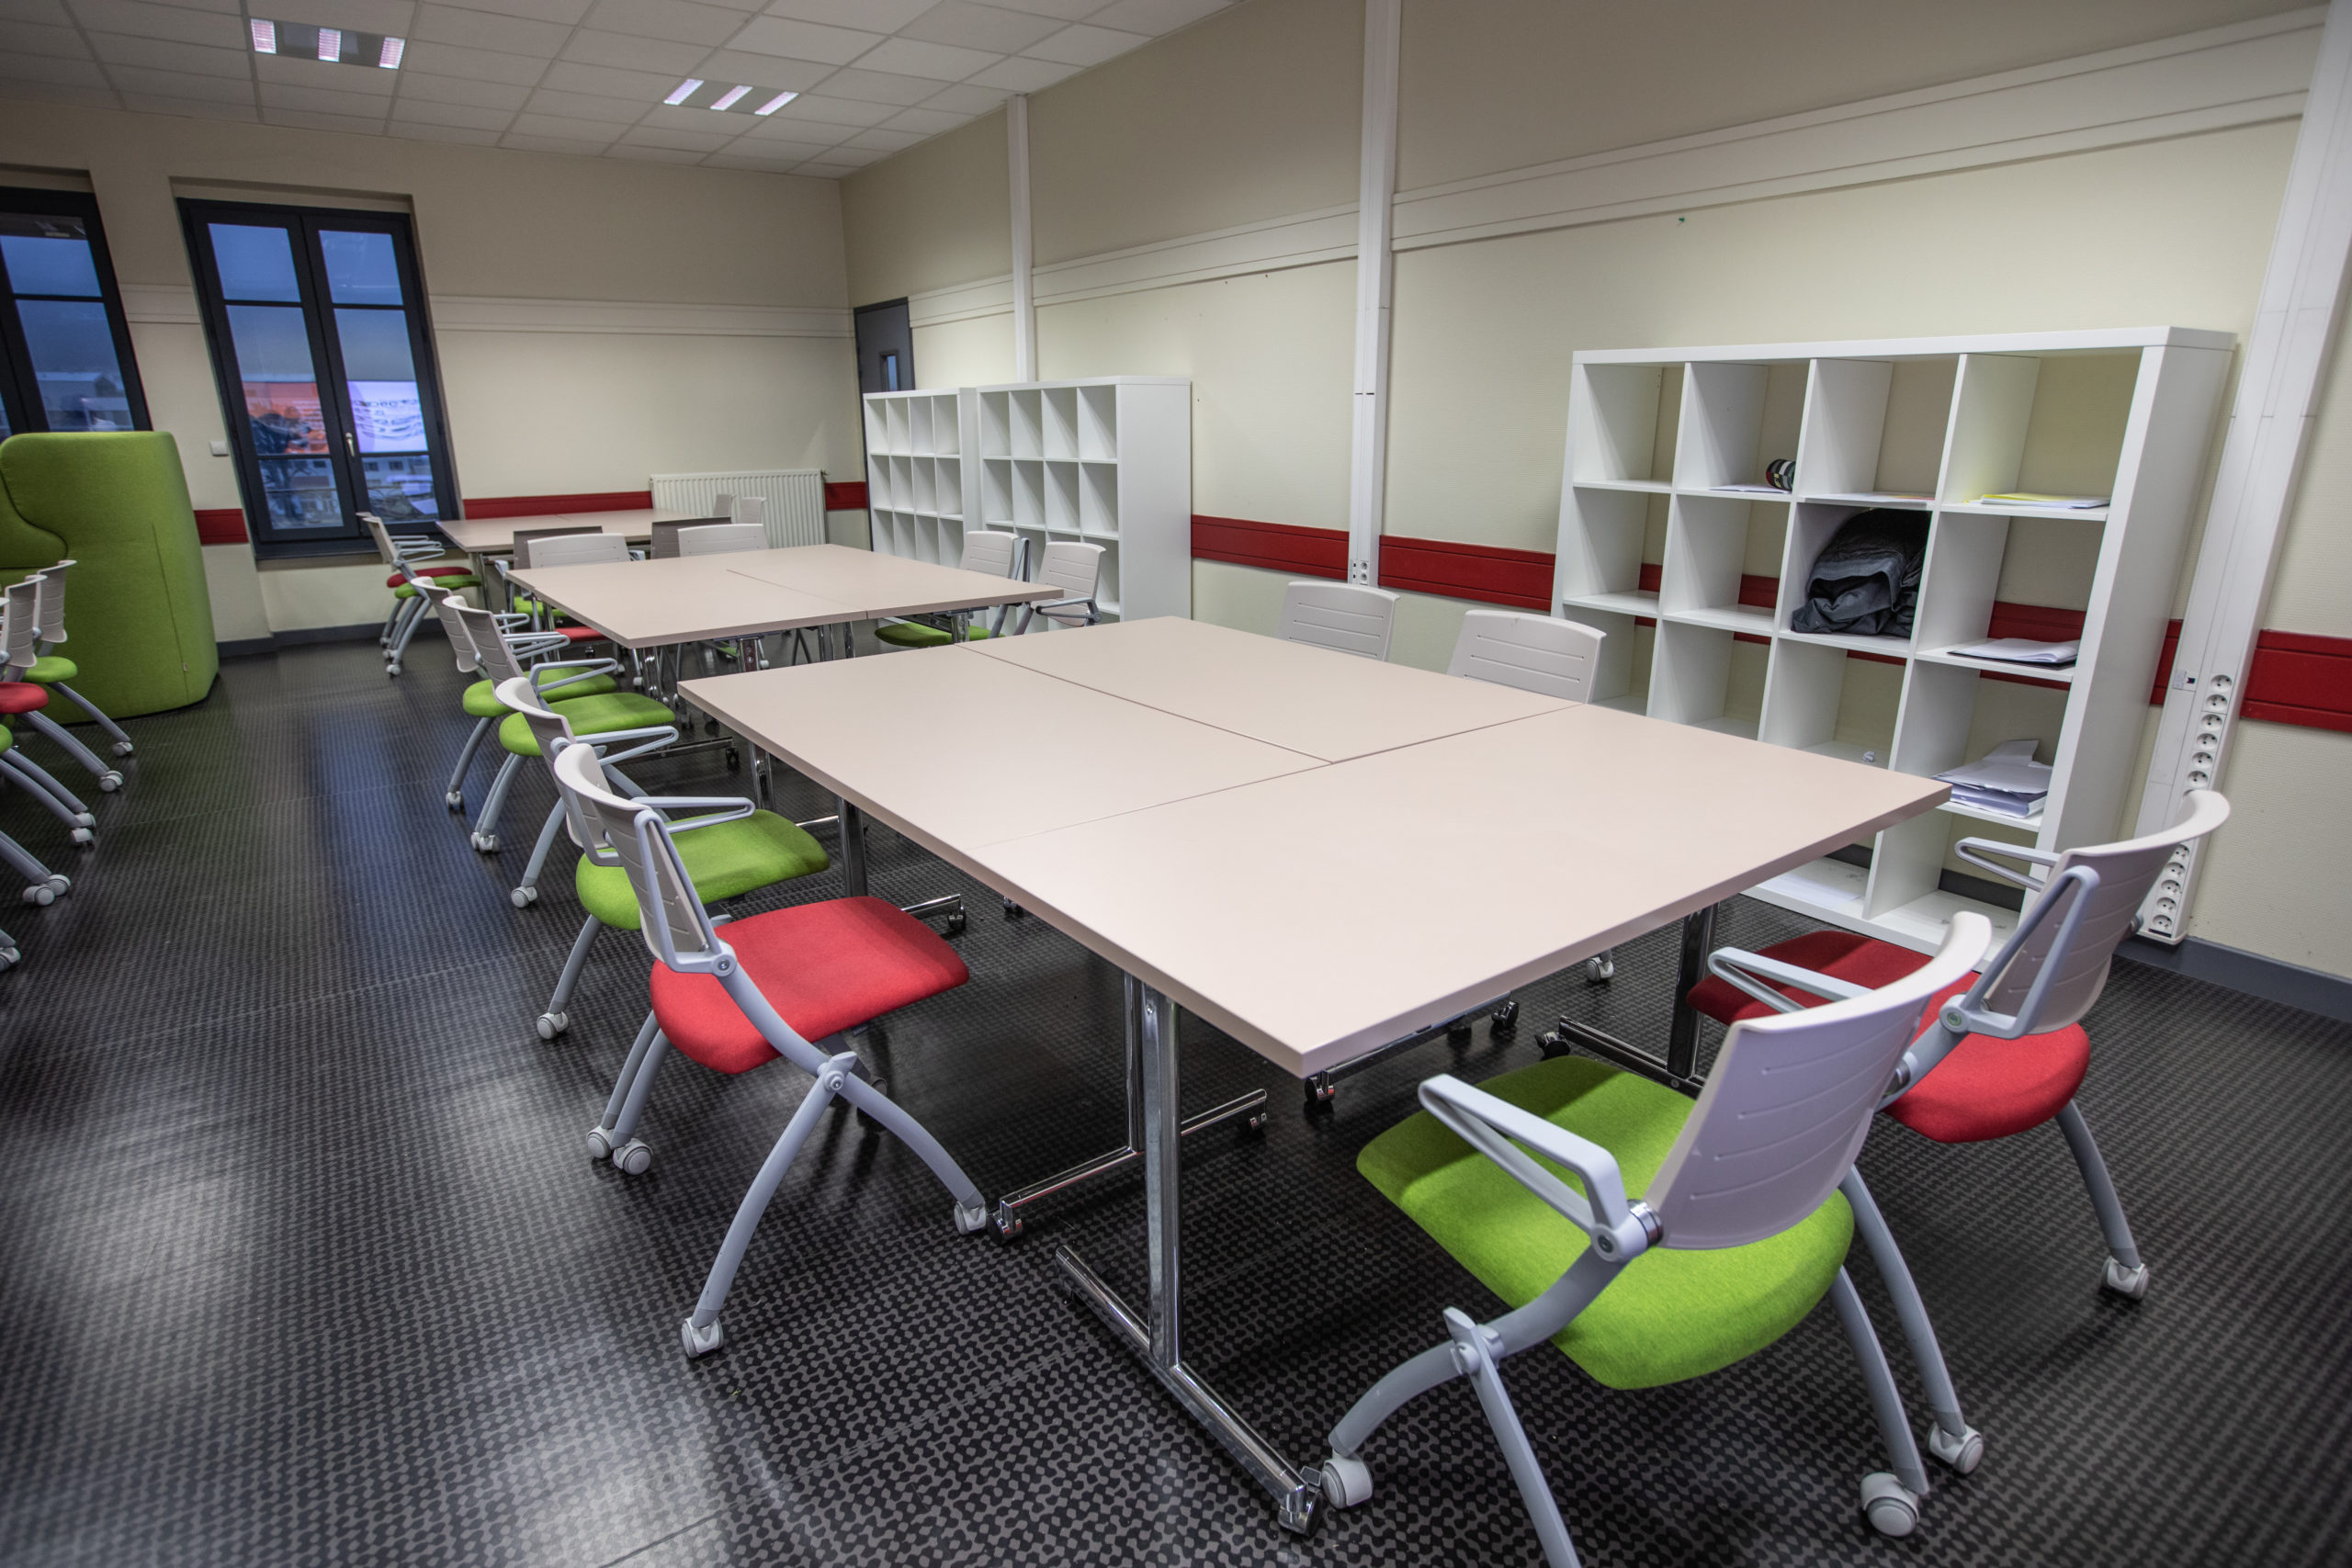 Tables à plateau rabattable avec chaises à assise rabattable dans un établissement scolaire en Isère